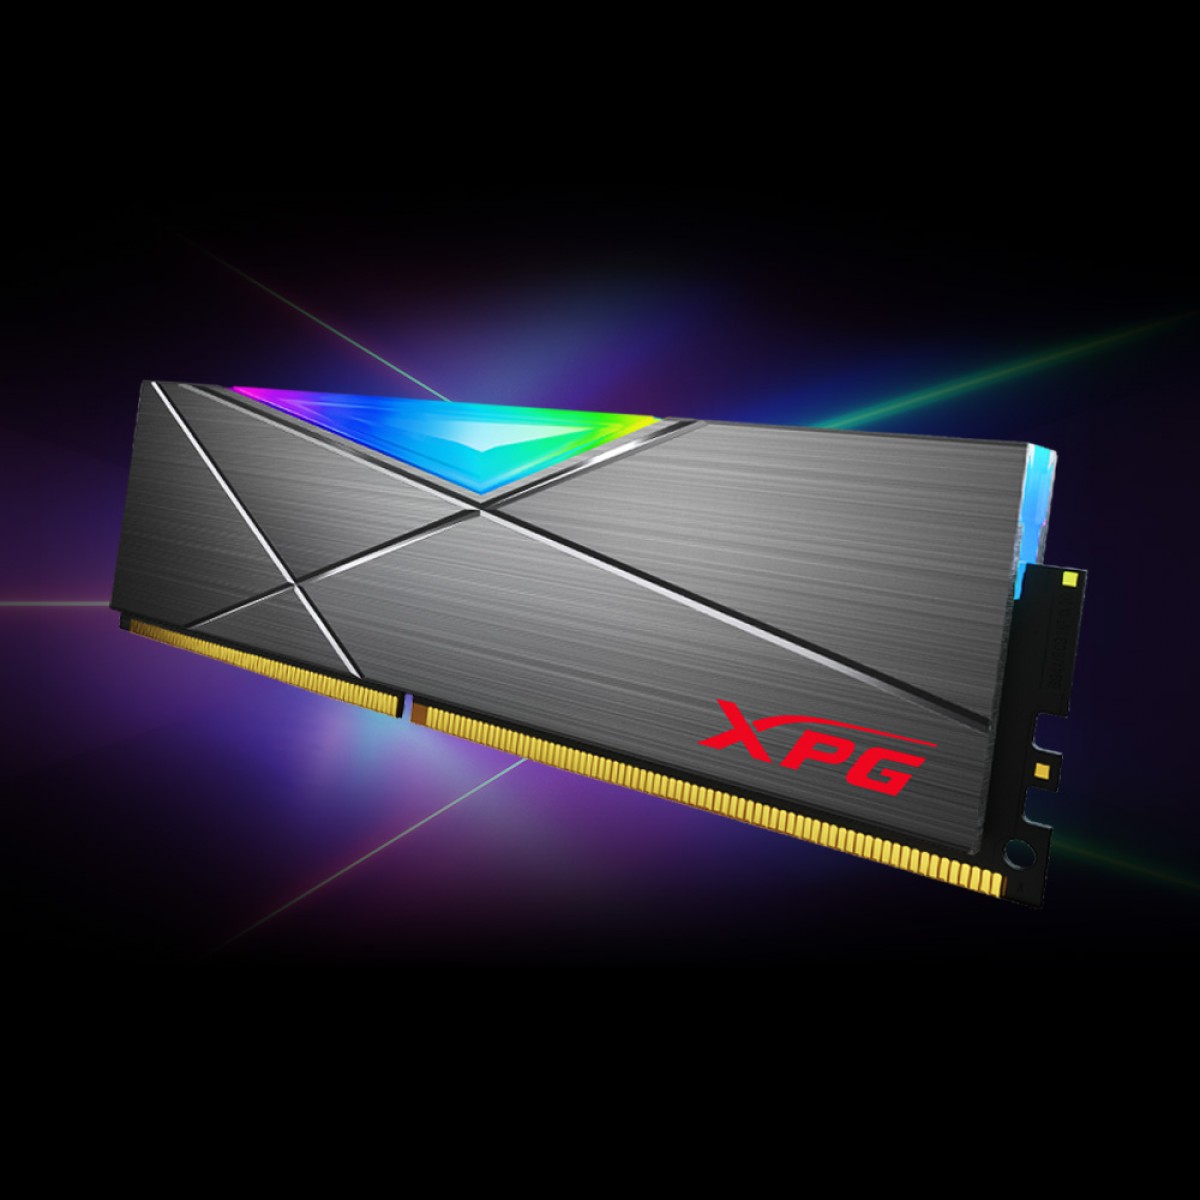 Memória DDR4 XPG Spectrix D50, 16GB (2x8GB), 3200Mhz, RGB, Gray, AX4U32008G16A-DT50